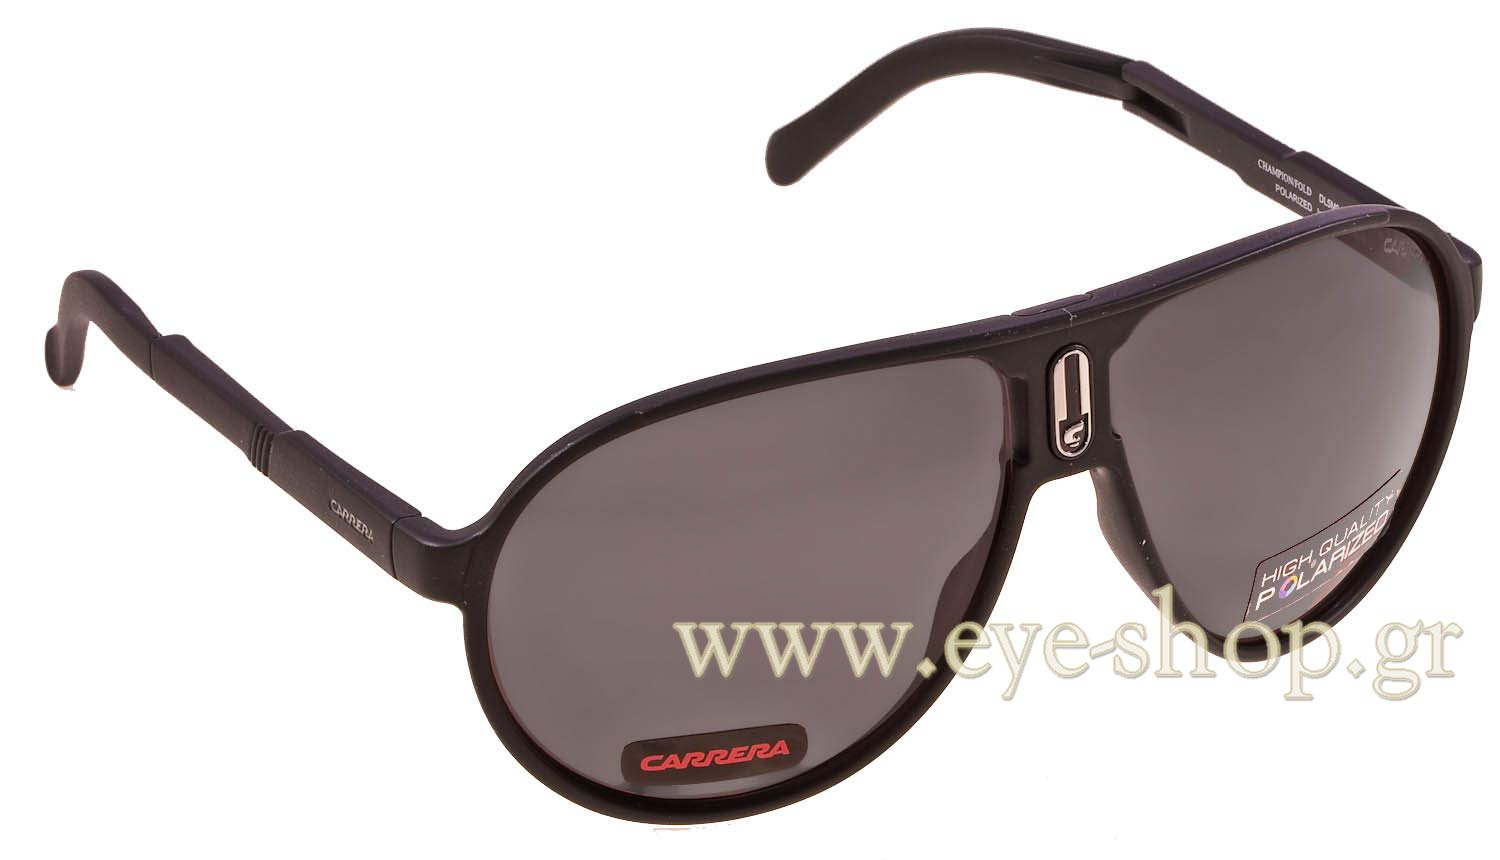 Γυαλιά Carrera CHAMPION /FOLD DL5M9